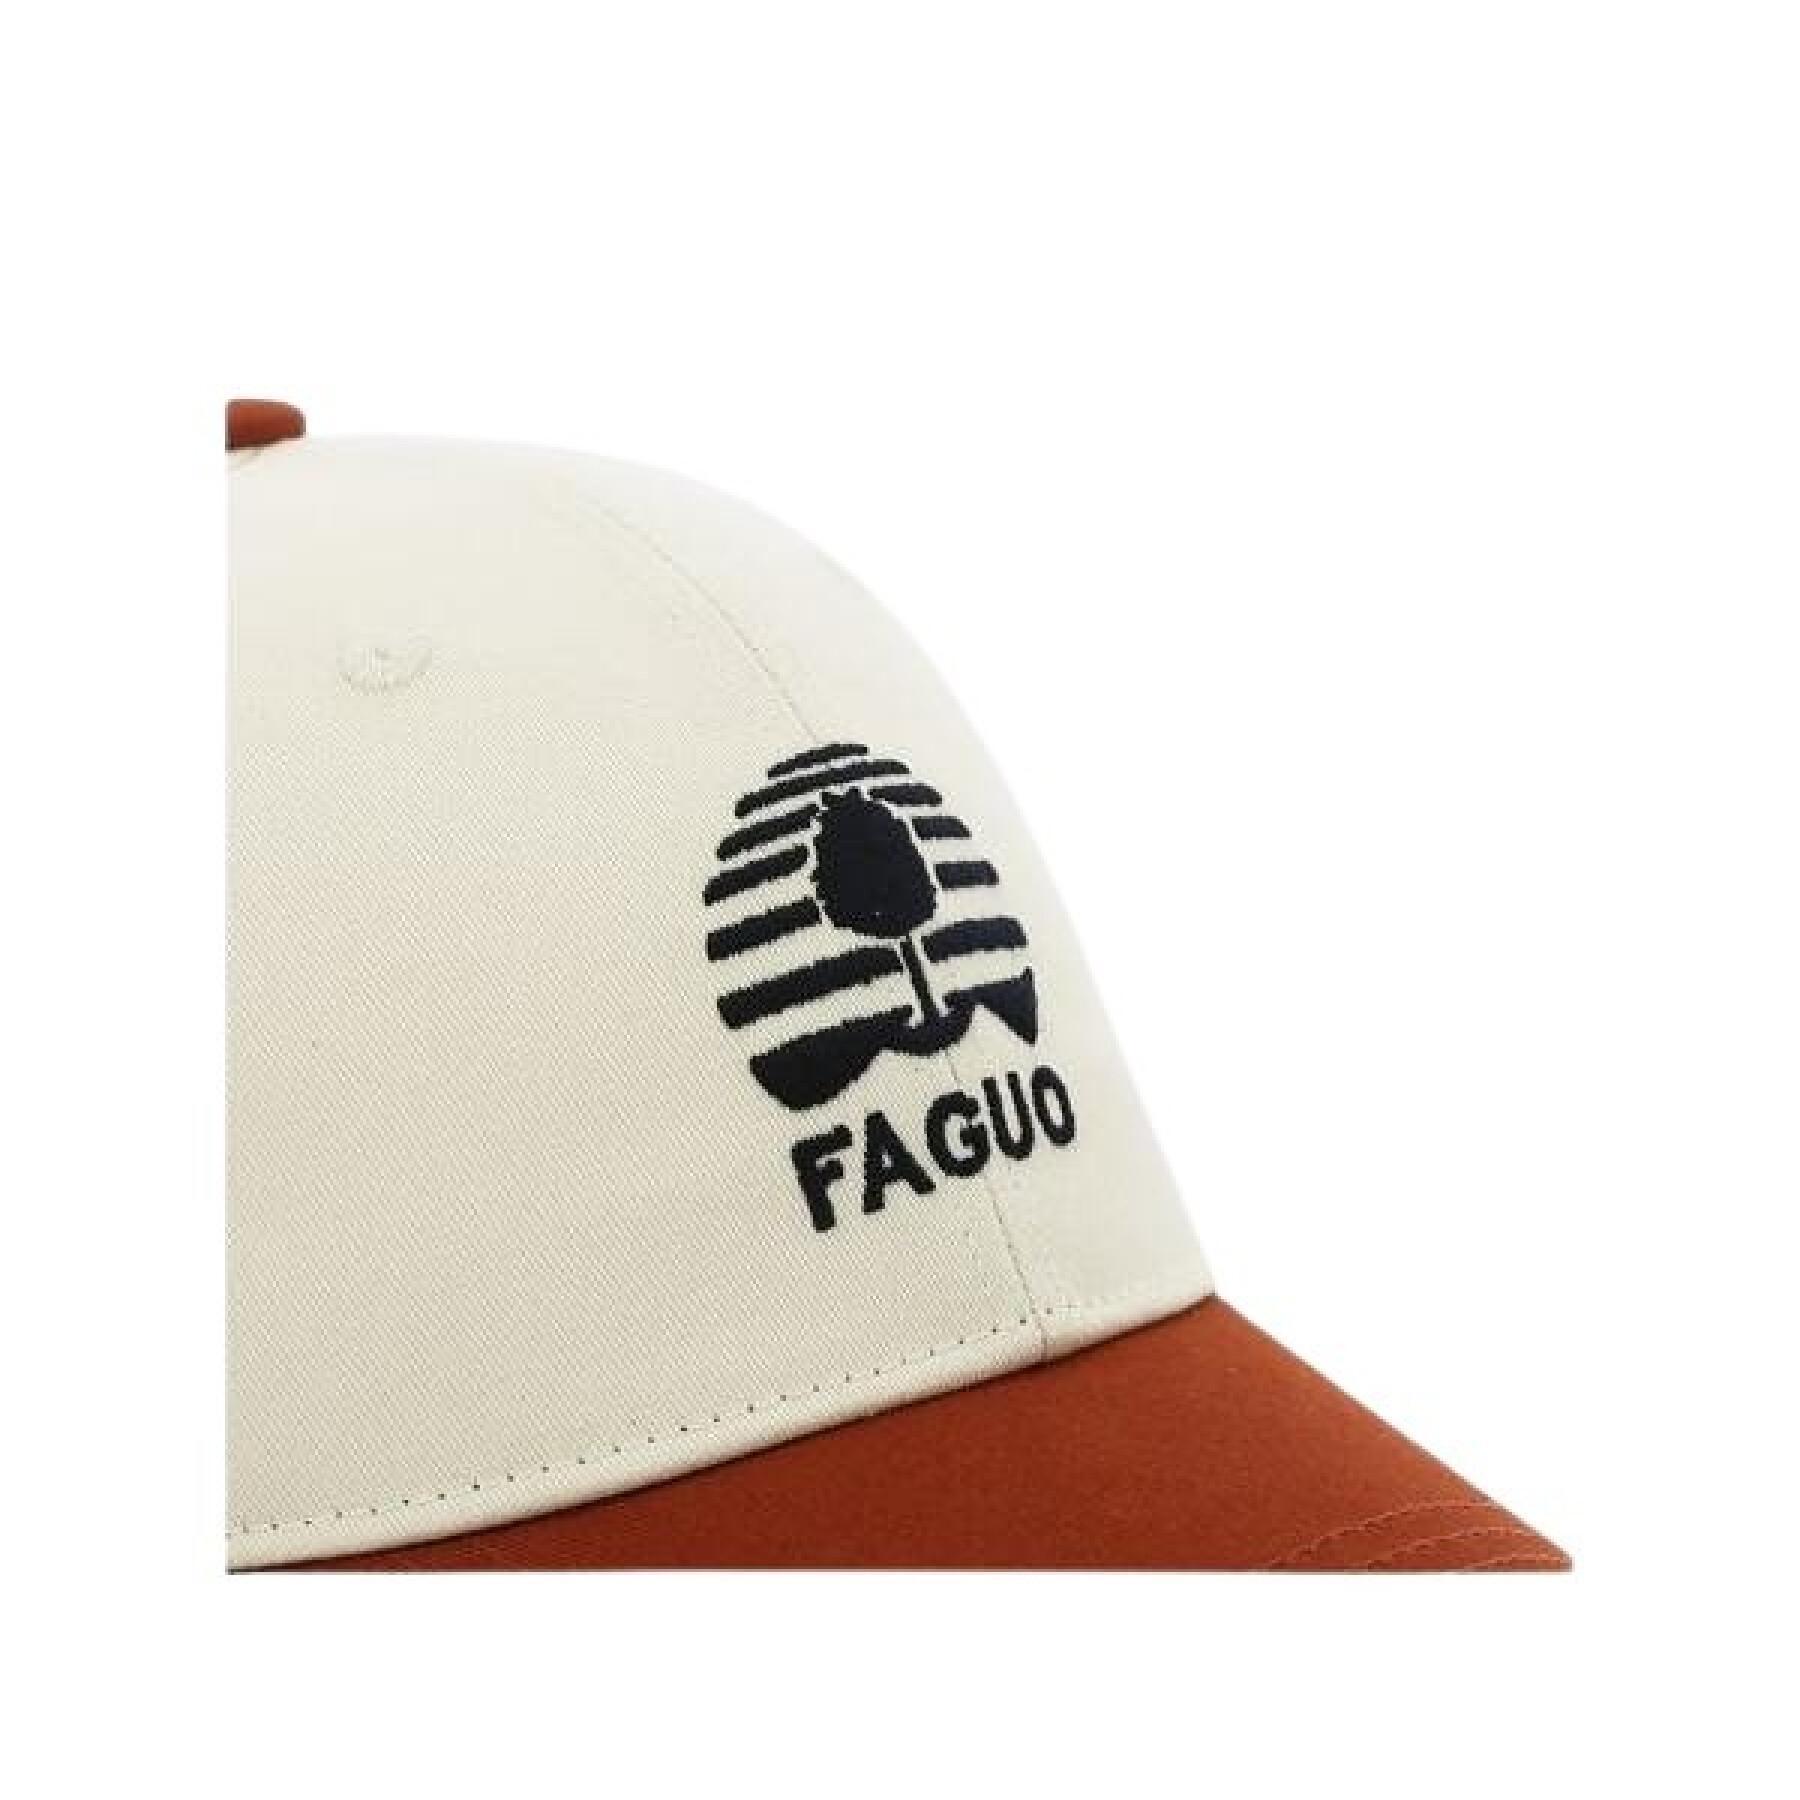 Woven synthetic cotton cap Faguo